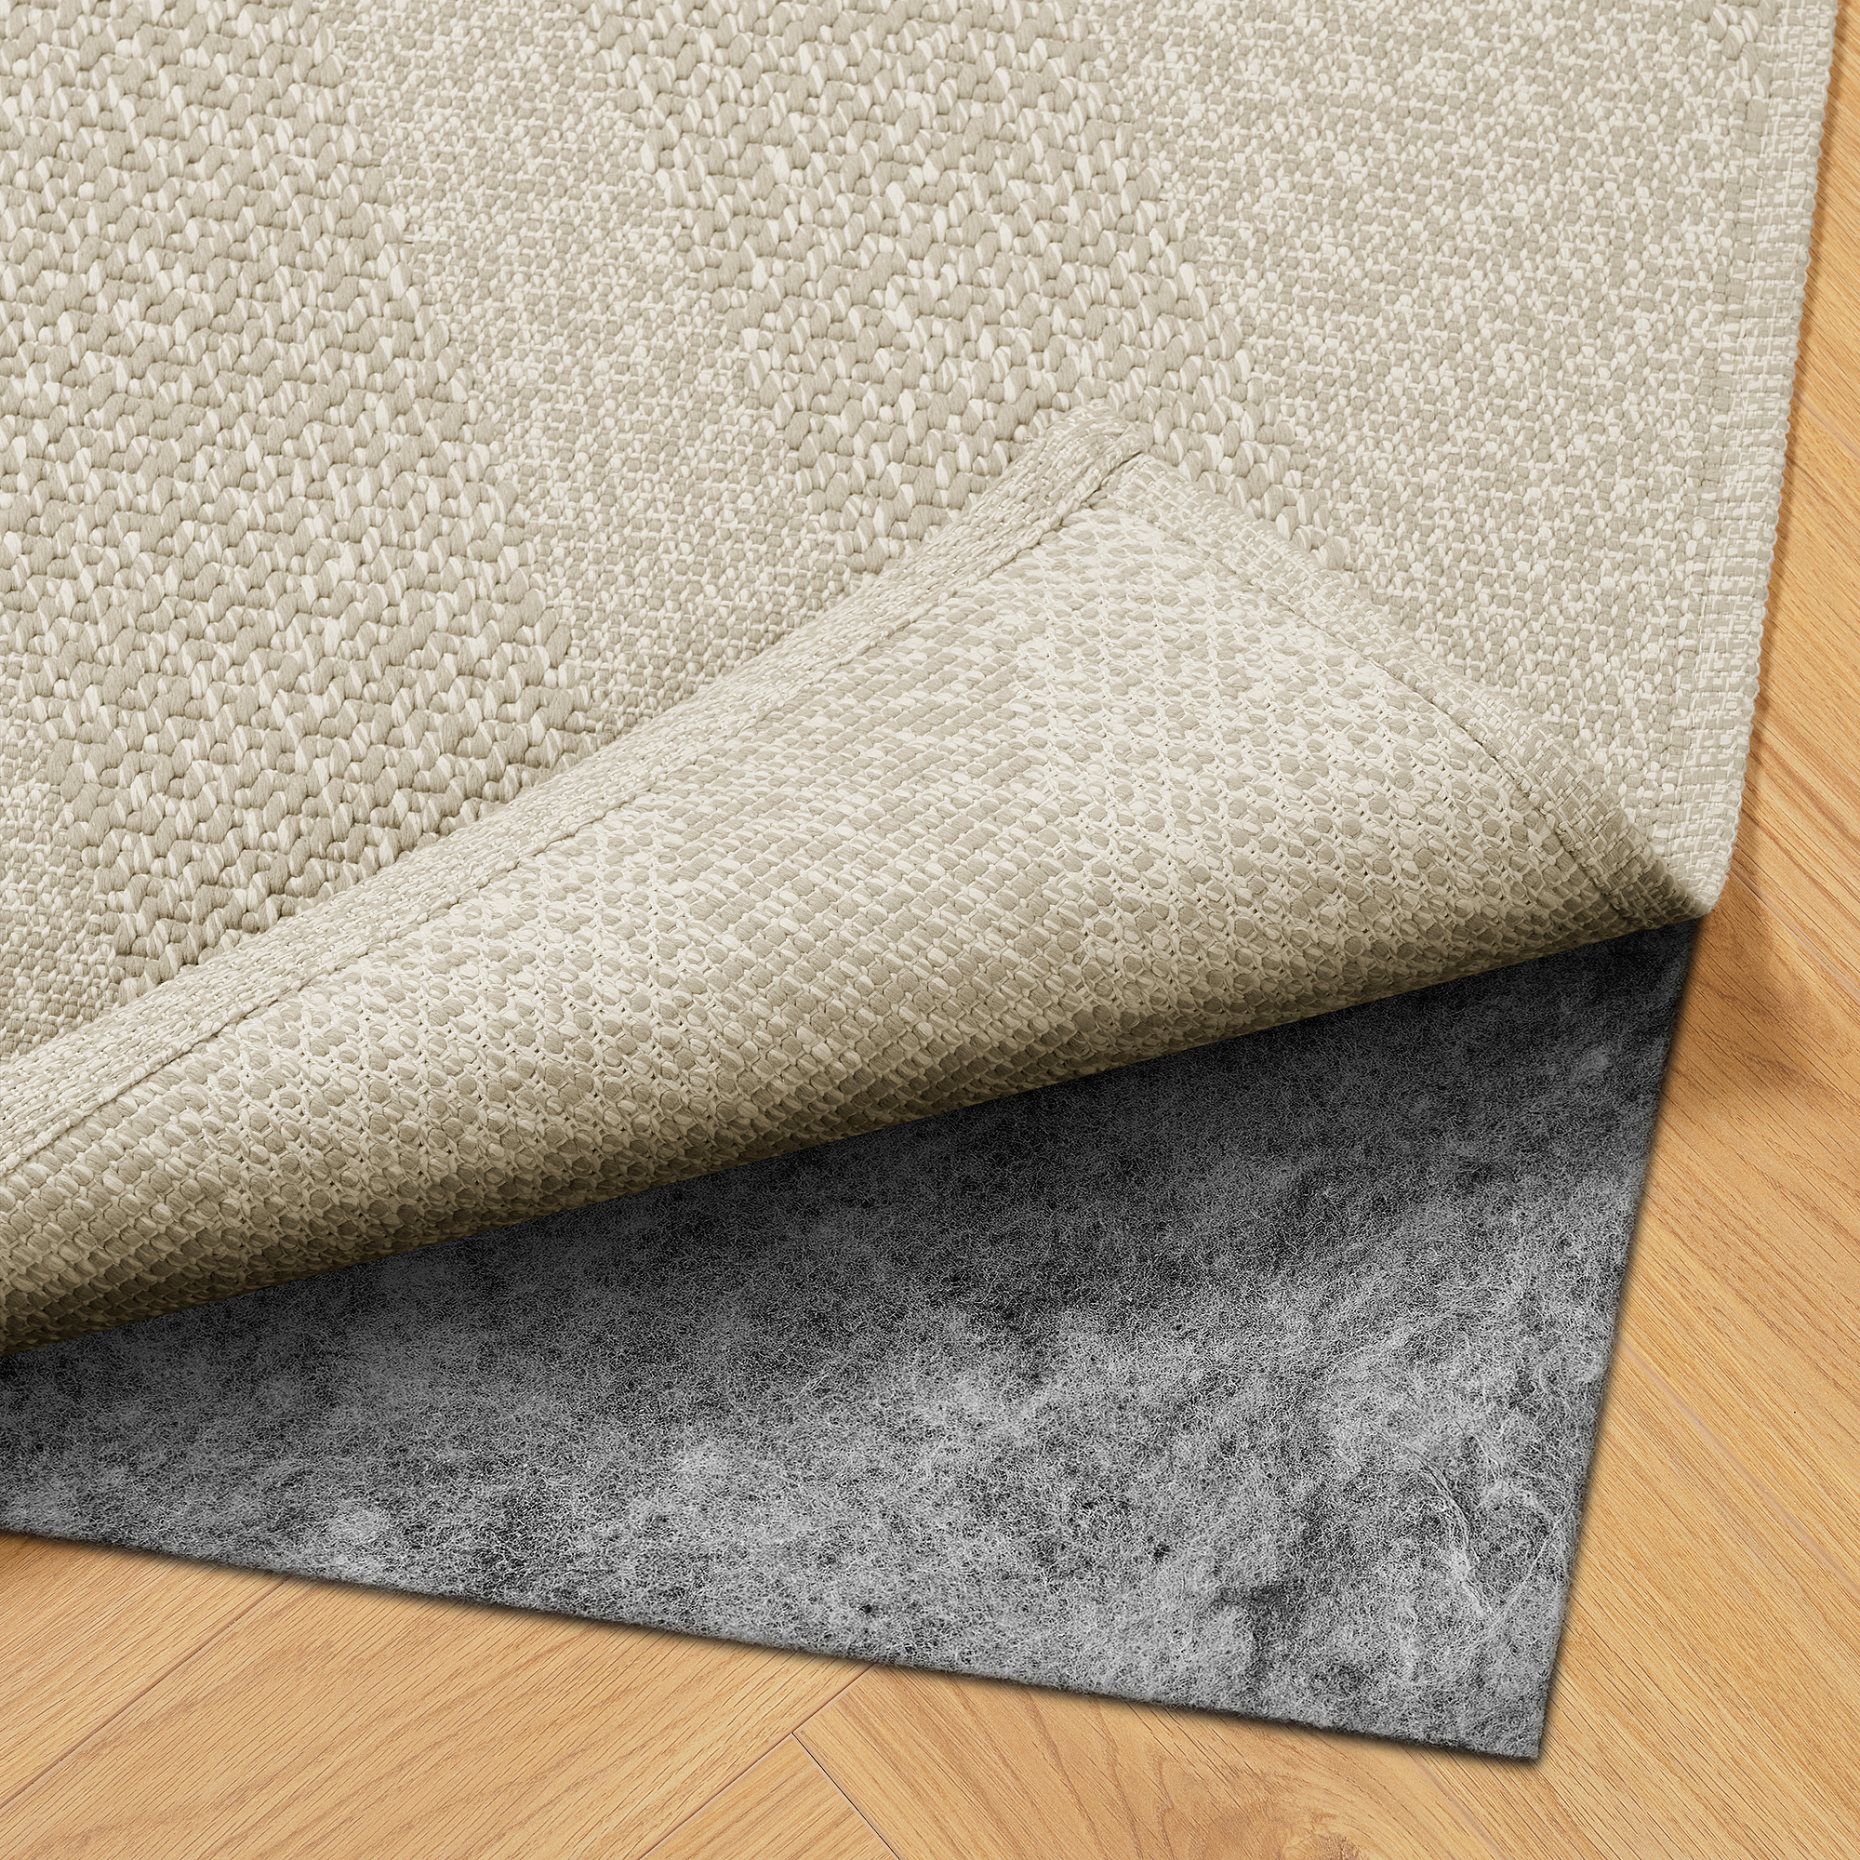 FULLMAKT, rug flatwoven/in/outdoor, 200x300 cm, 805.731.08